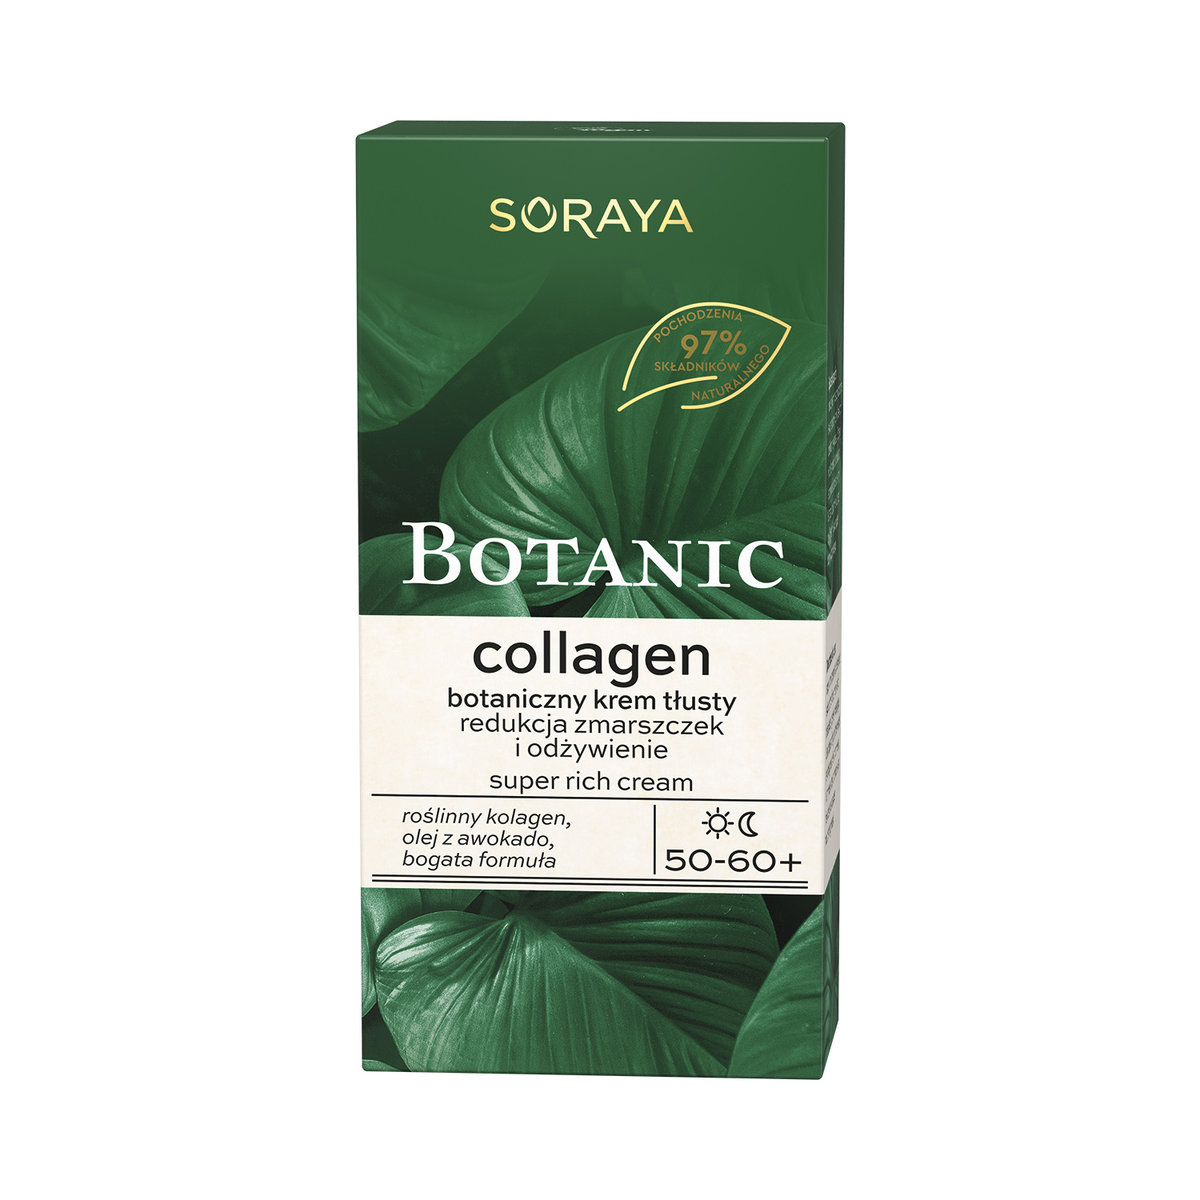 Soraya Soraya Botanic Collagen 50/60+ botaniczny krem tłusty 50 ml SORAYA 086293